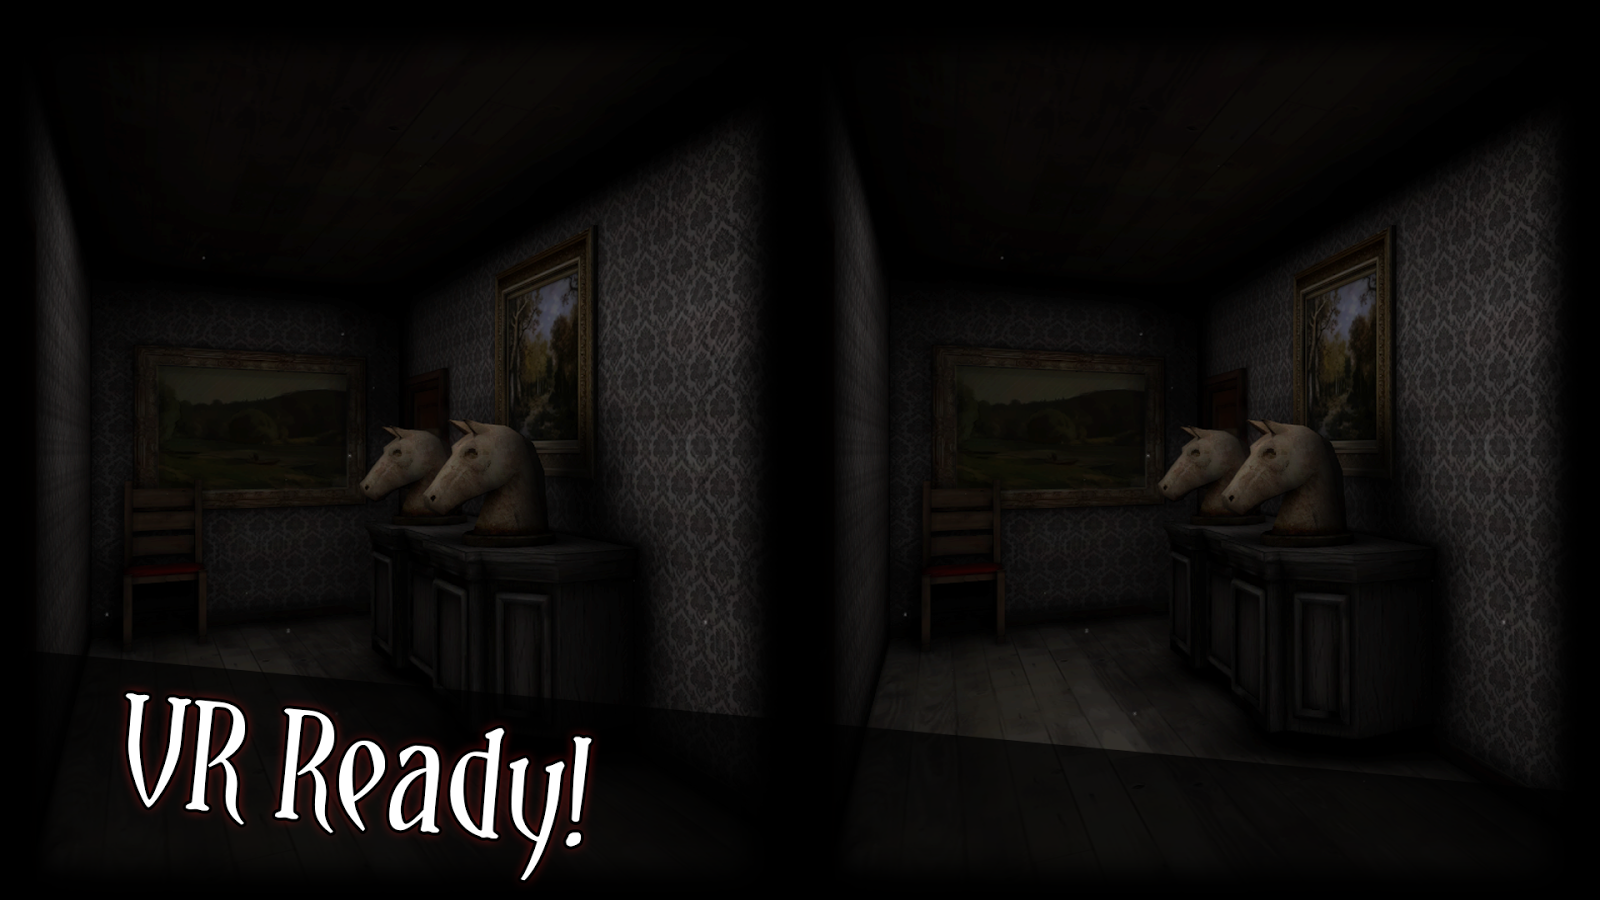   Sinister Edge - Horror game screenshot 